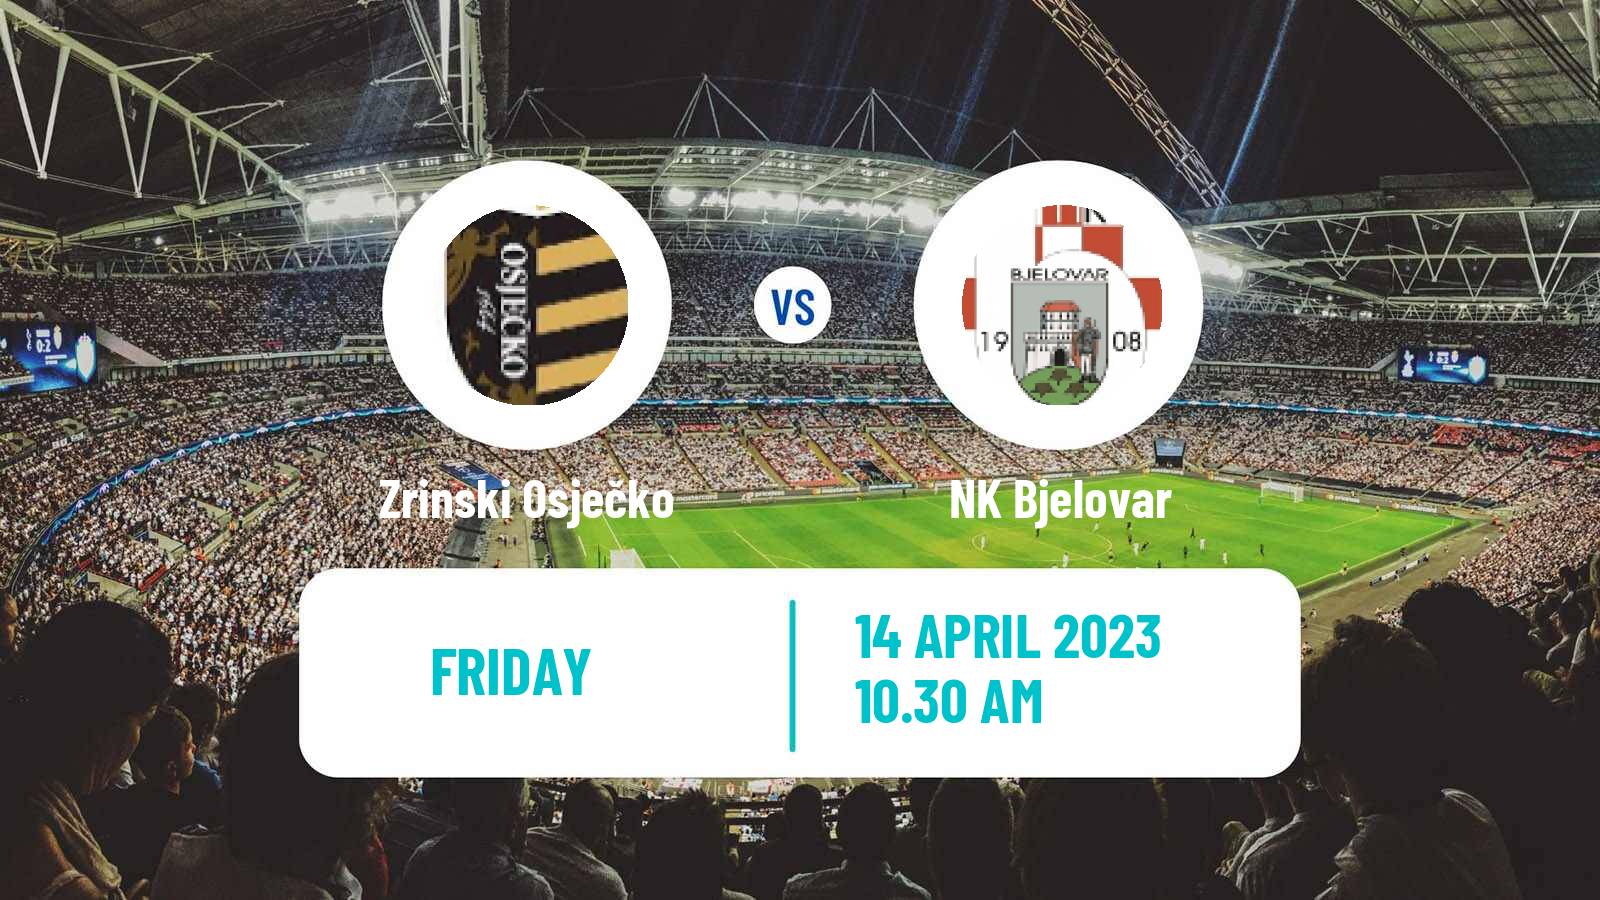 Soccer Croatian Druga NL Zrinski Osječko - Bjelovar